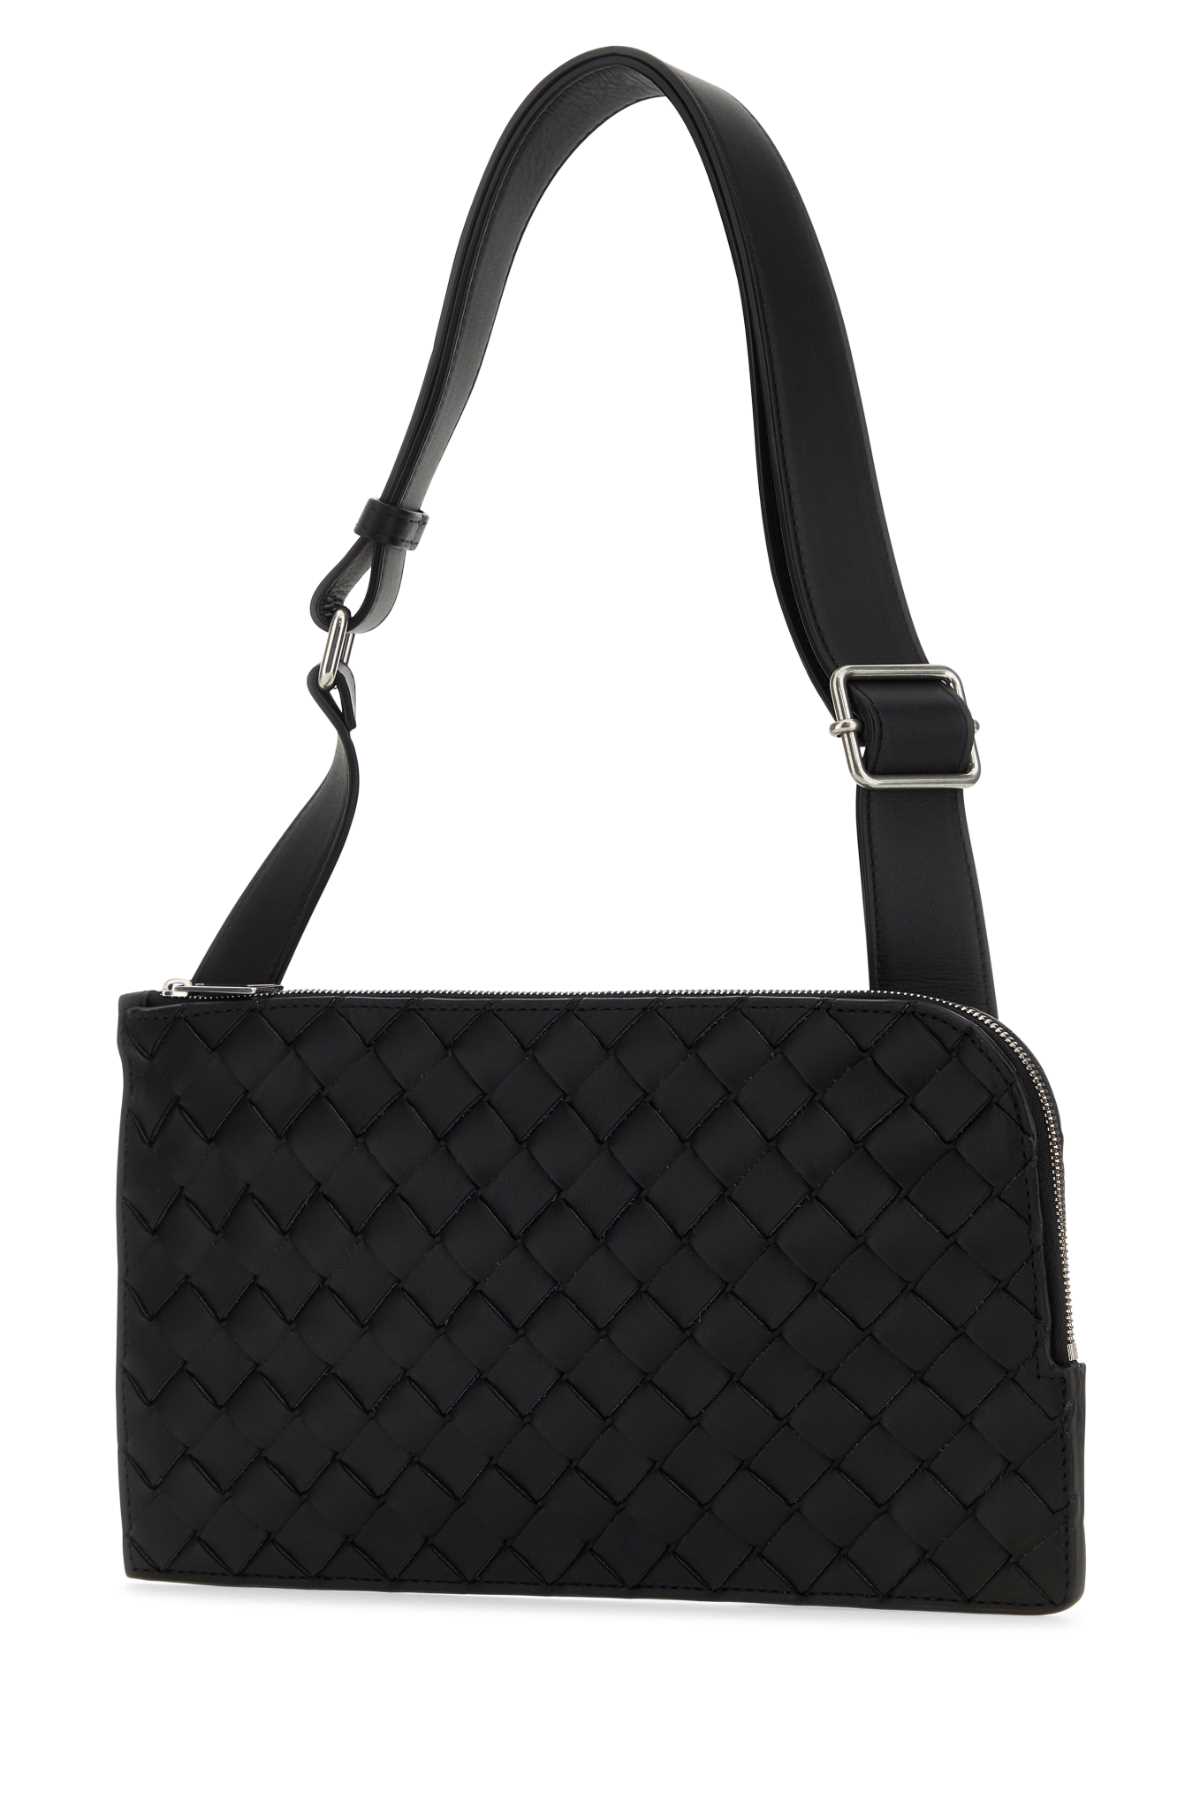 Bottega Veneta Black Leather Belt Bag In Blacksilver